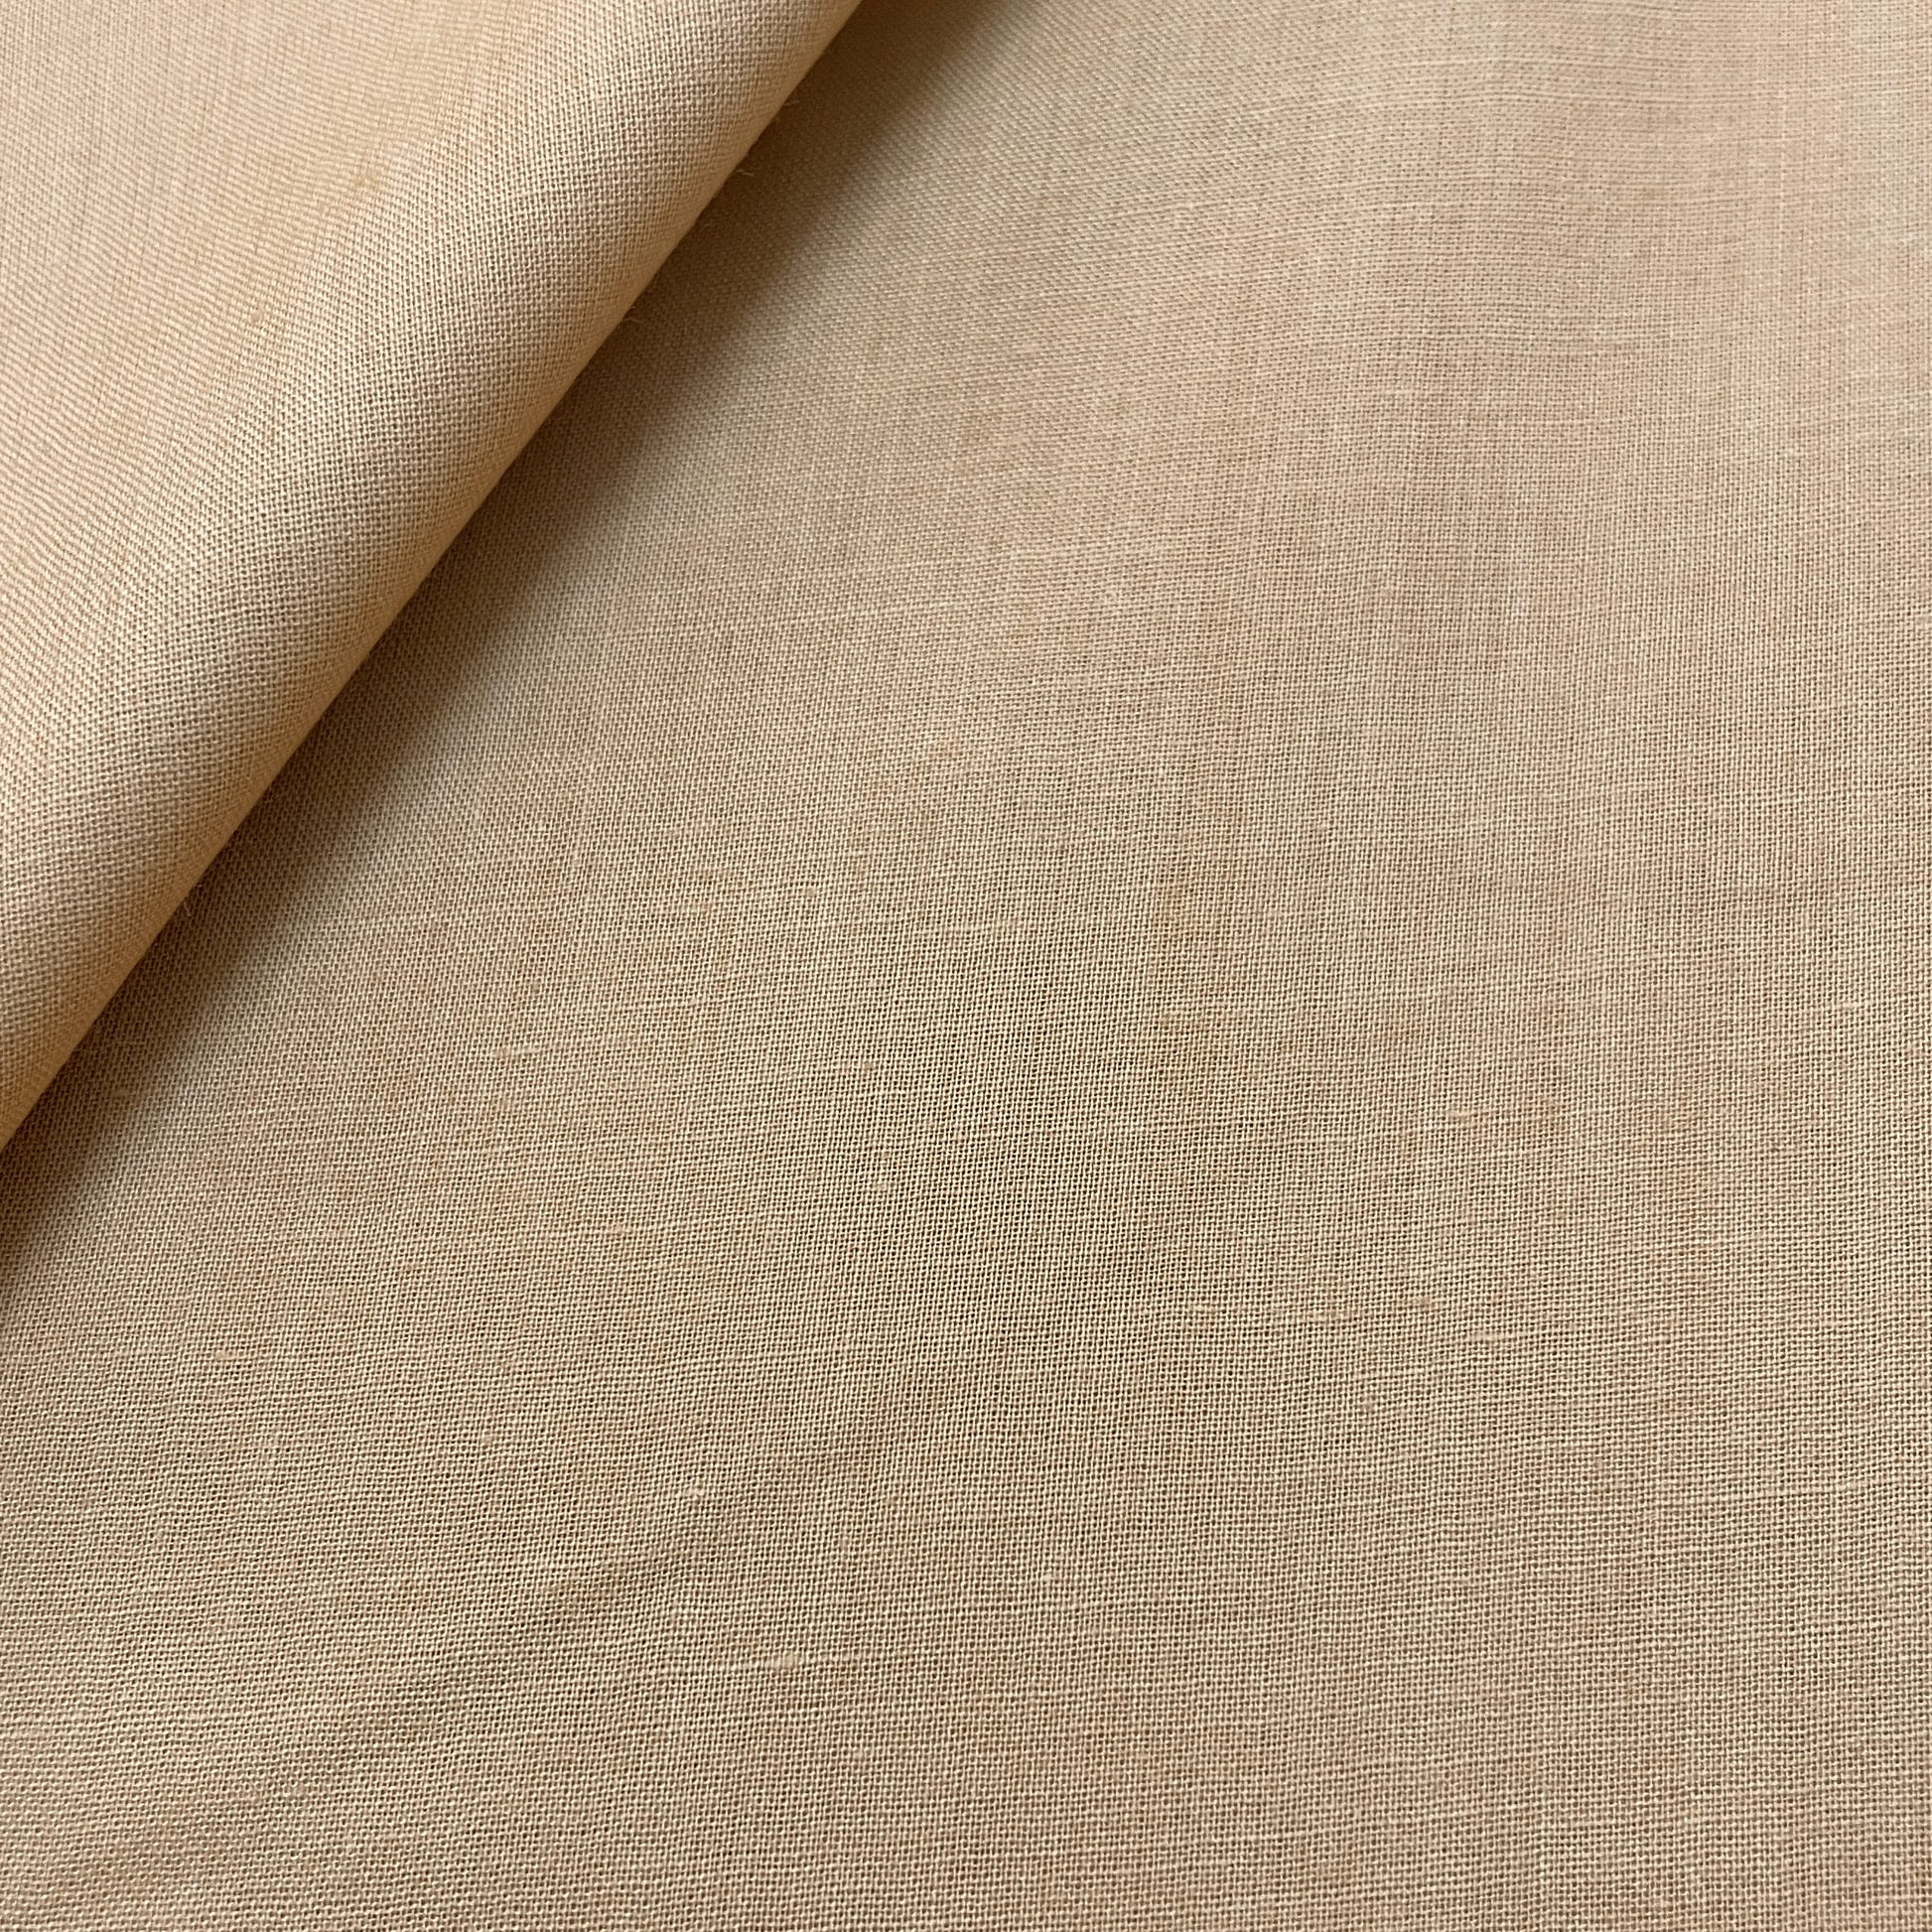 Premium Linen Cream Solid Cotton Mulmul Fabric